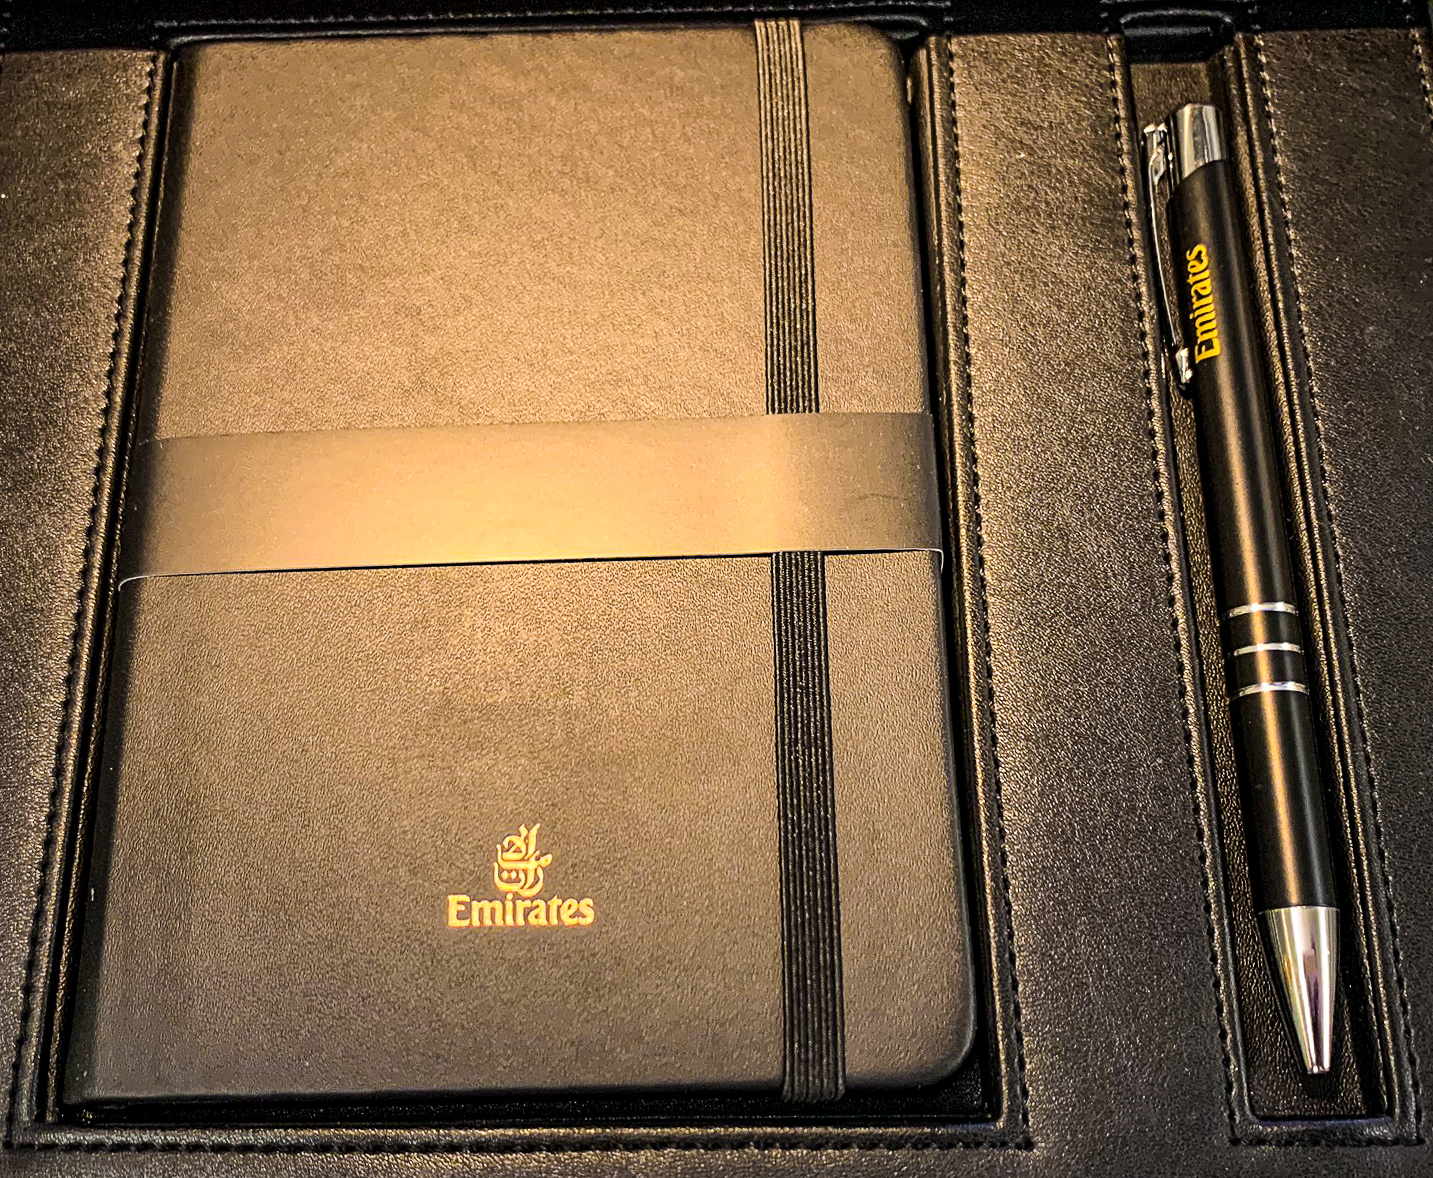 Emirates 777 First Class Notebook